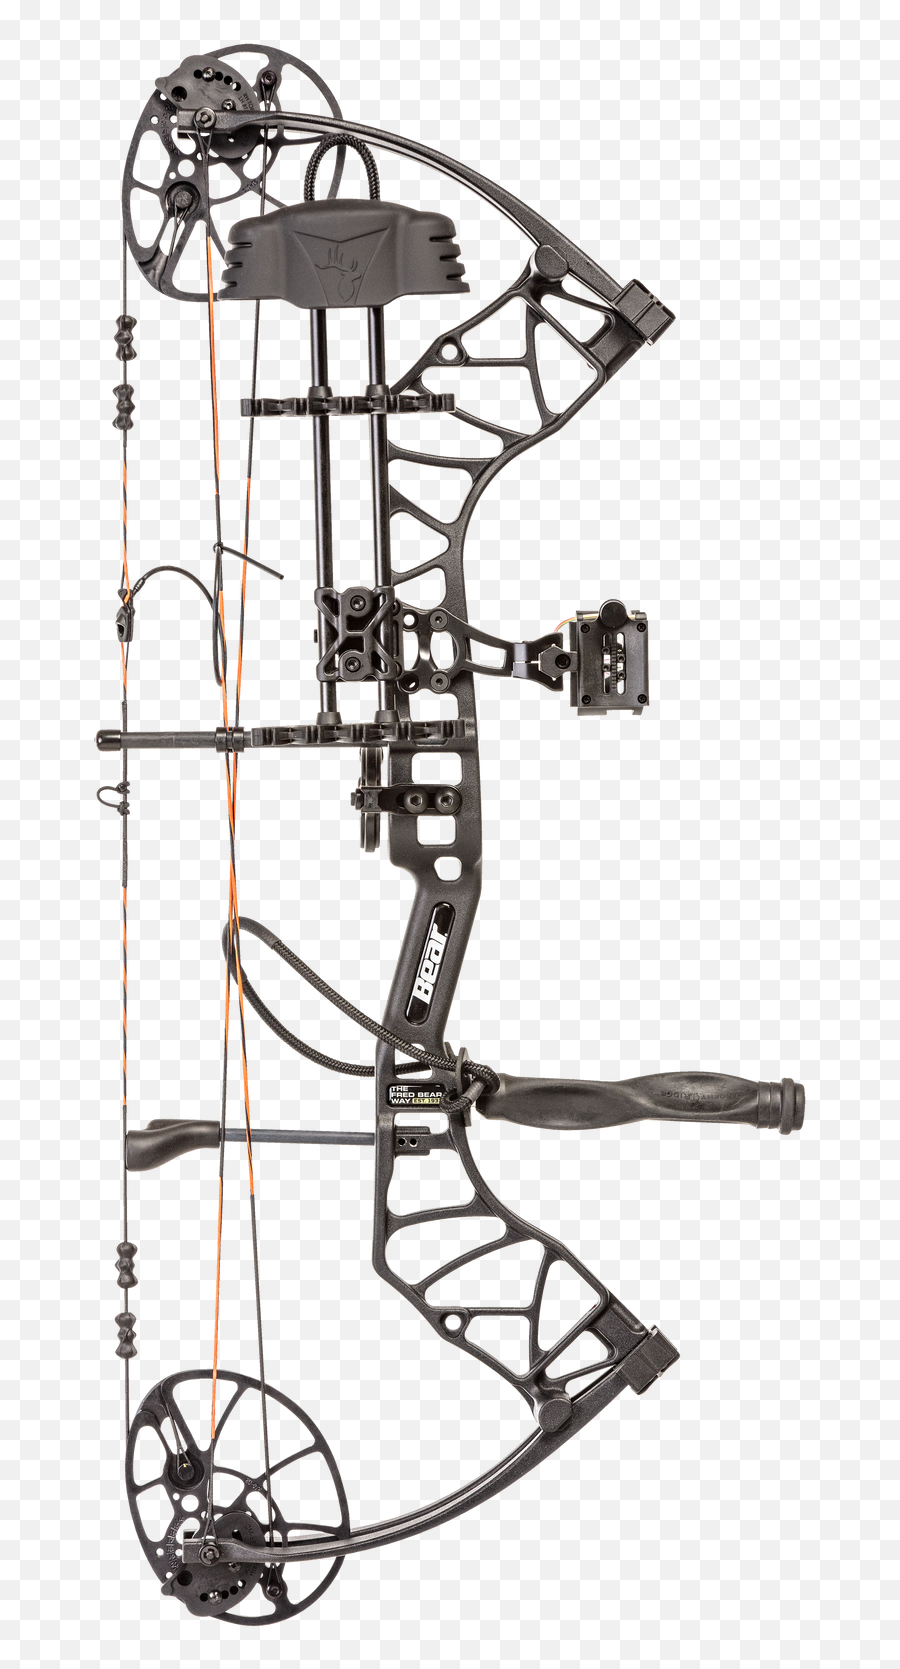 Bear Archery Legit Rth Shadow - Black For Sale Online Ebay Png,Mathews Icon